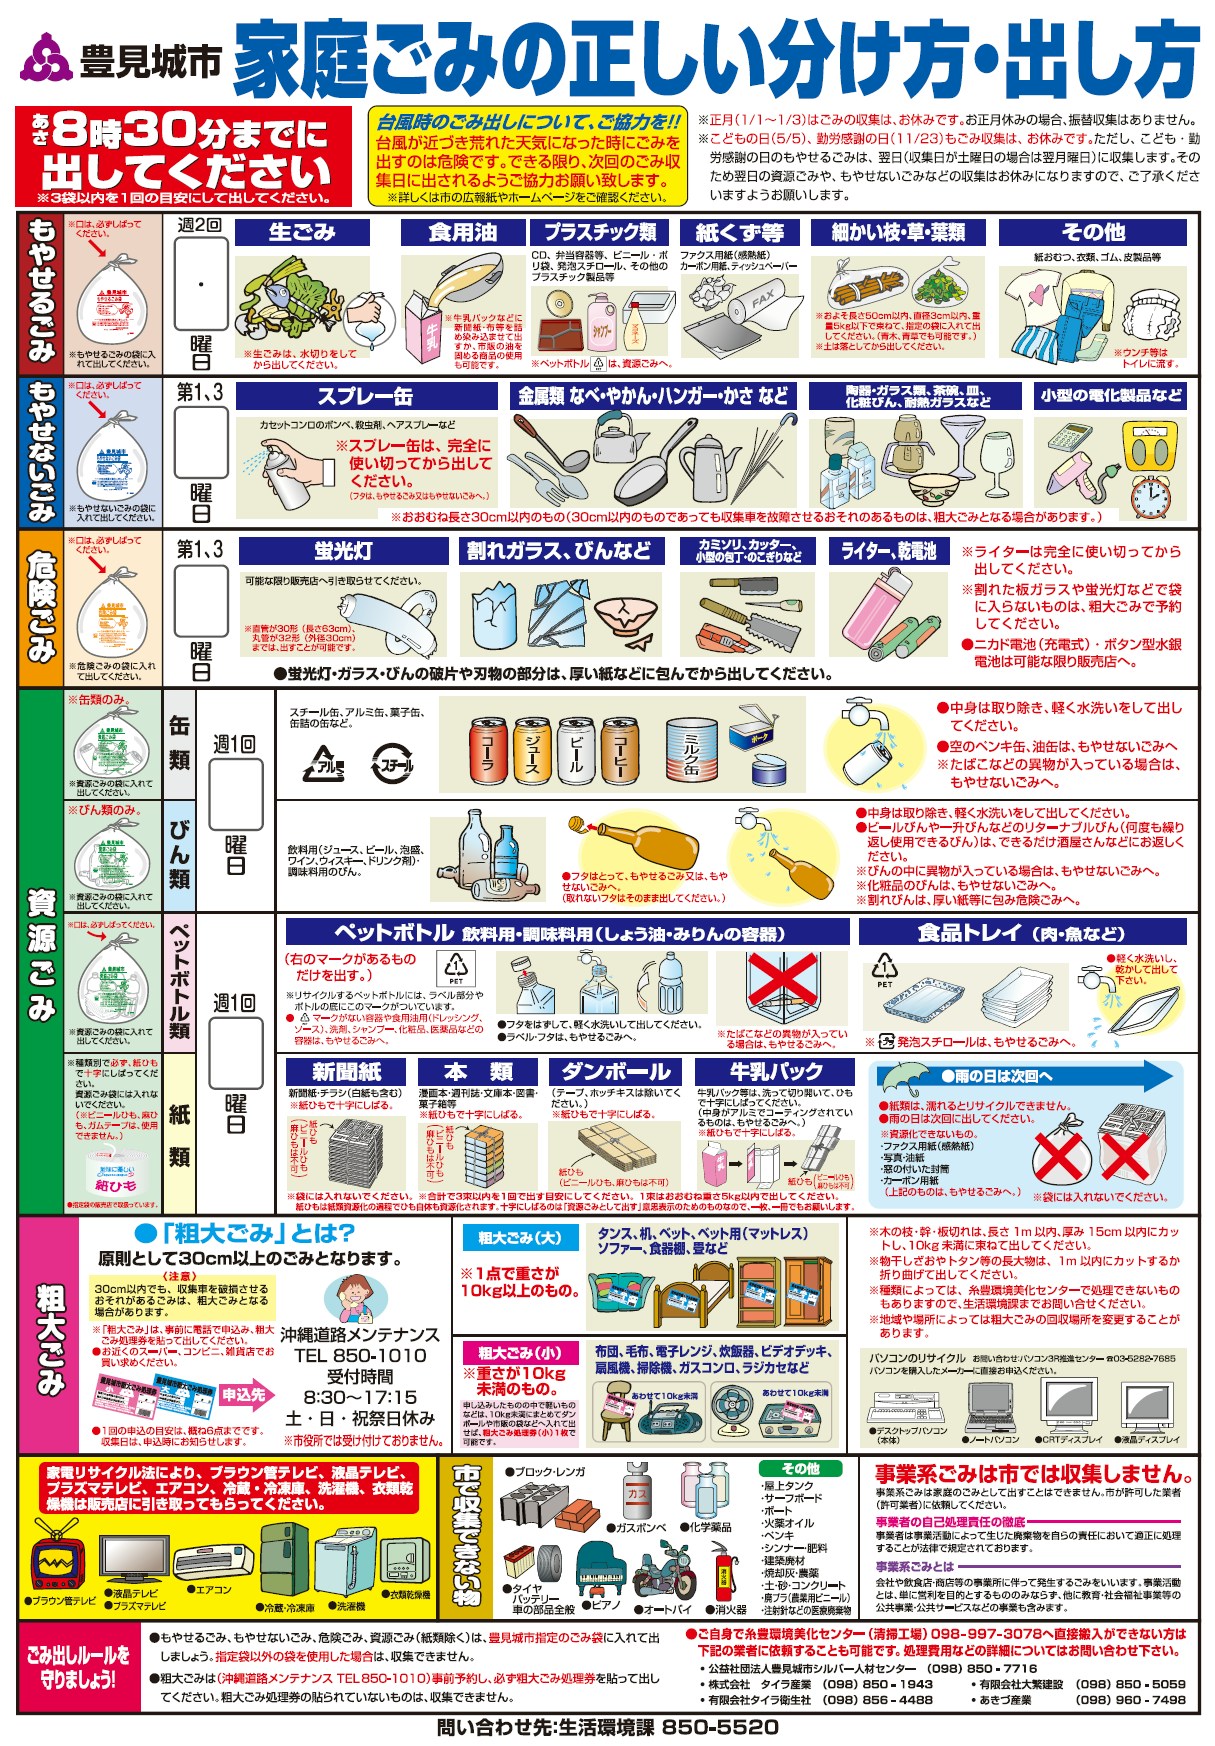 日本垃圾分类和处理十分繁杂，市政府在居民移居当地之初便会分发类似的图表，方便市民照着做。(丰见城市政府网页)